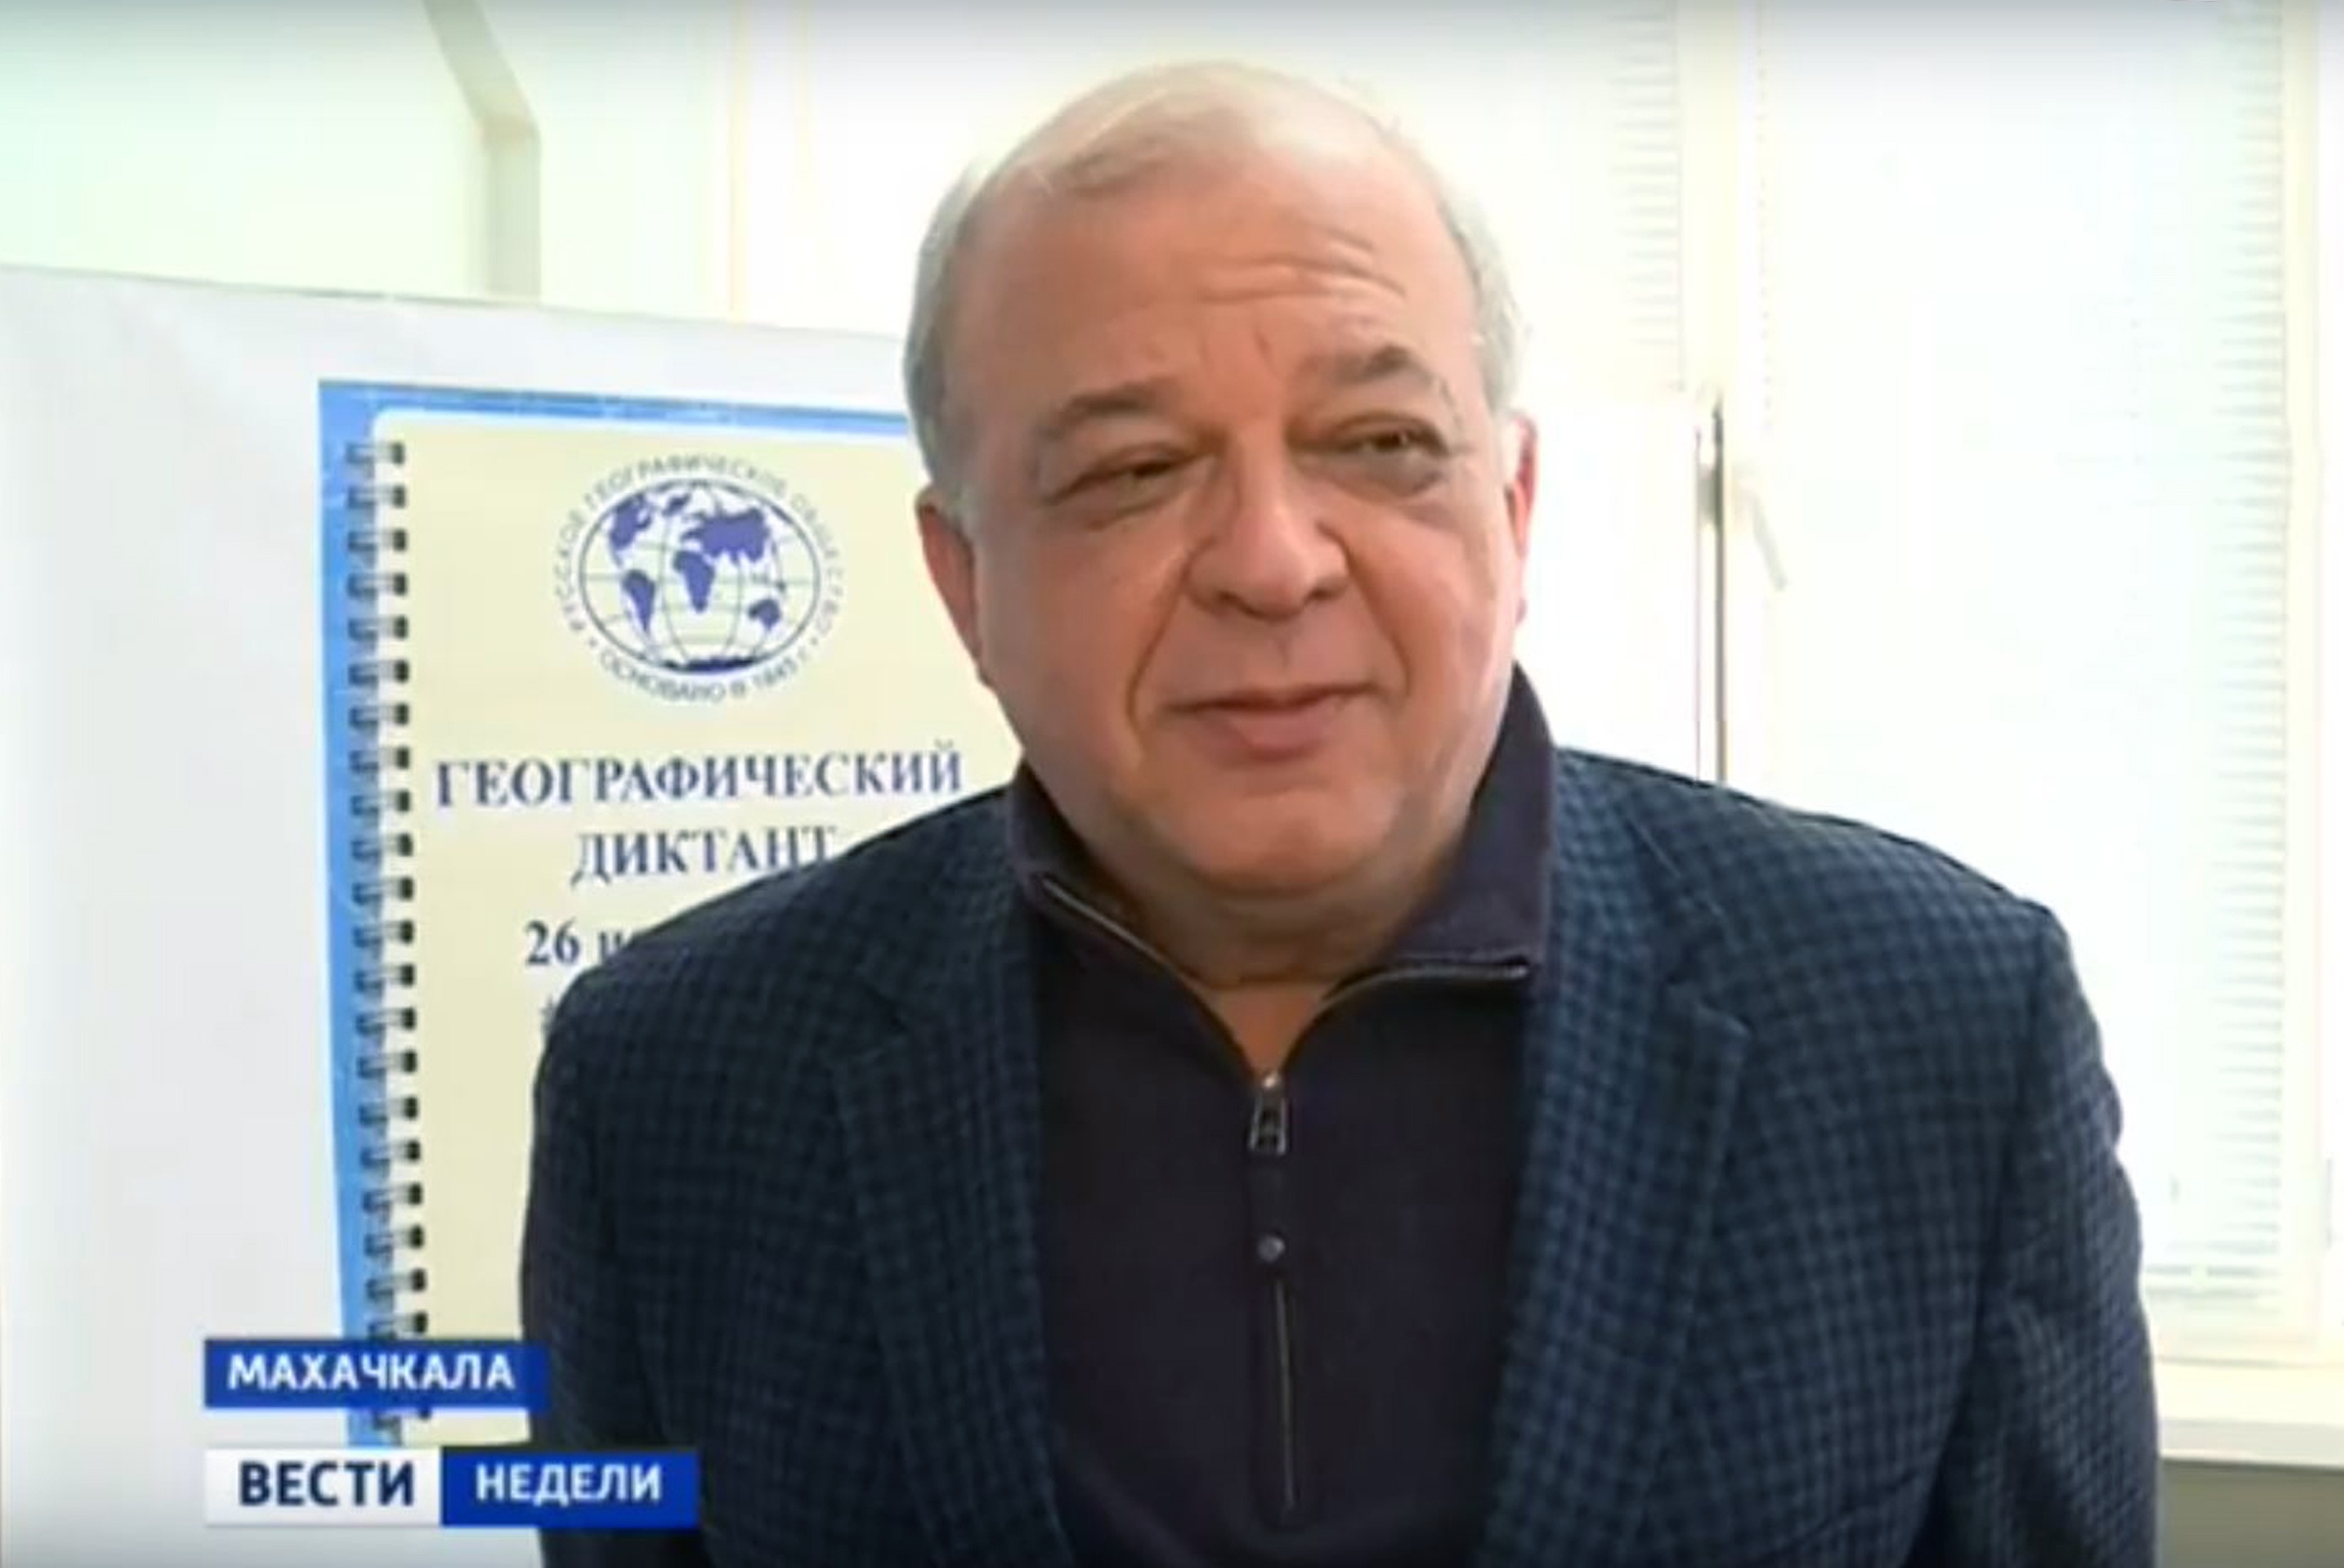 Впечатлениями о Диктанте делится первый заместитель премьер-министра РД Анатолий Карибов